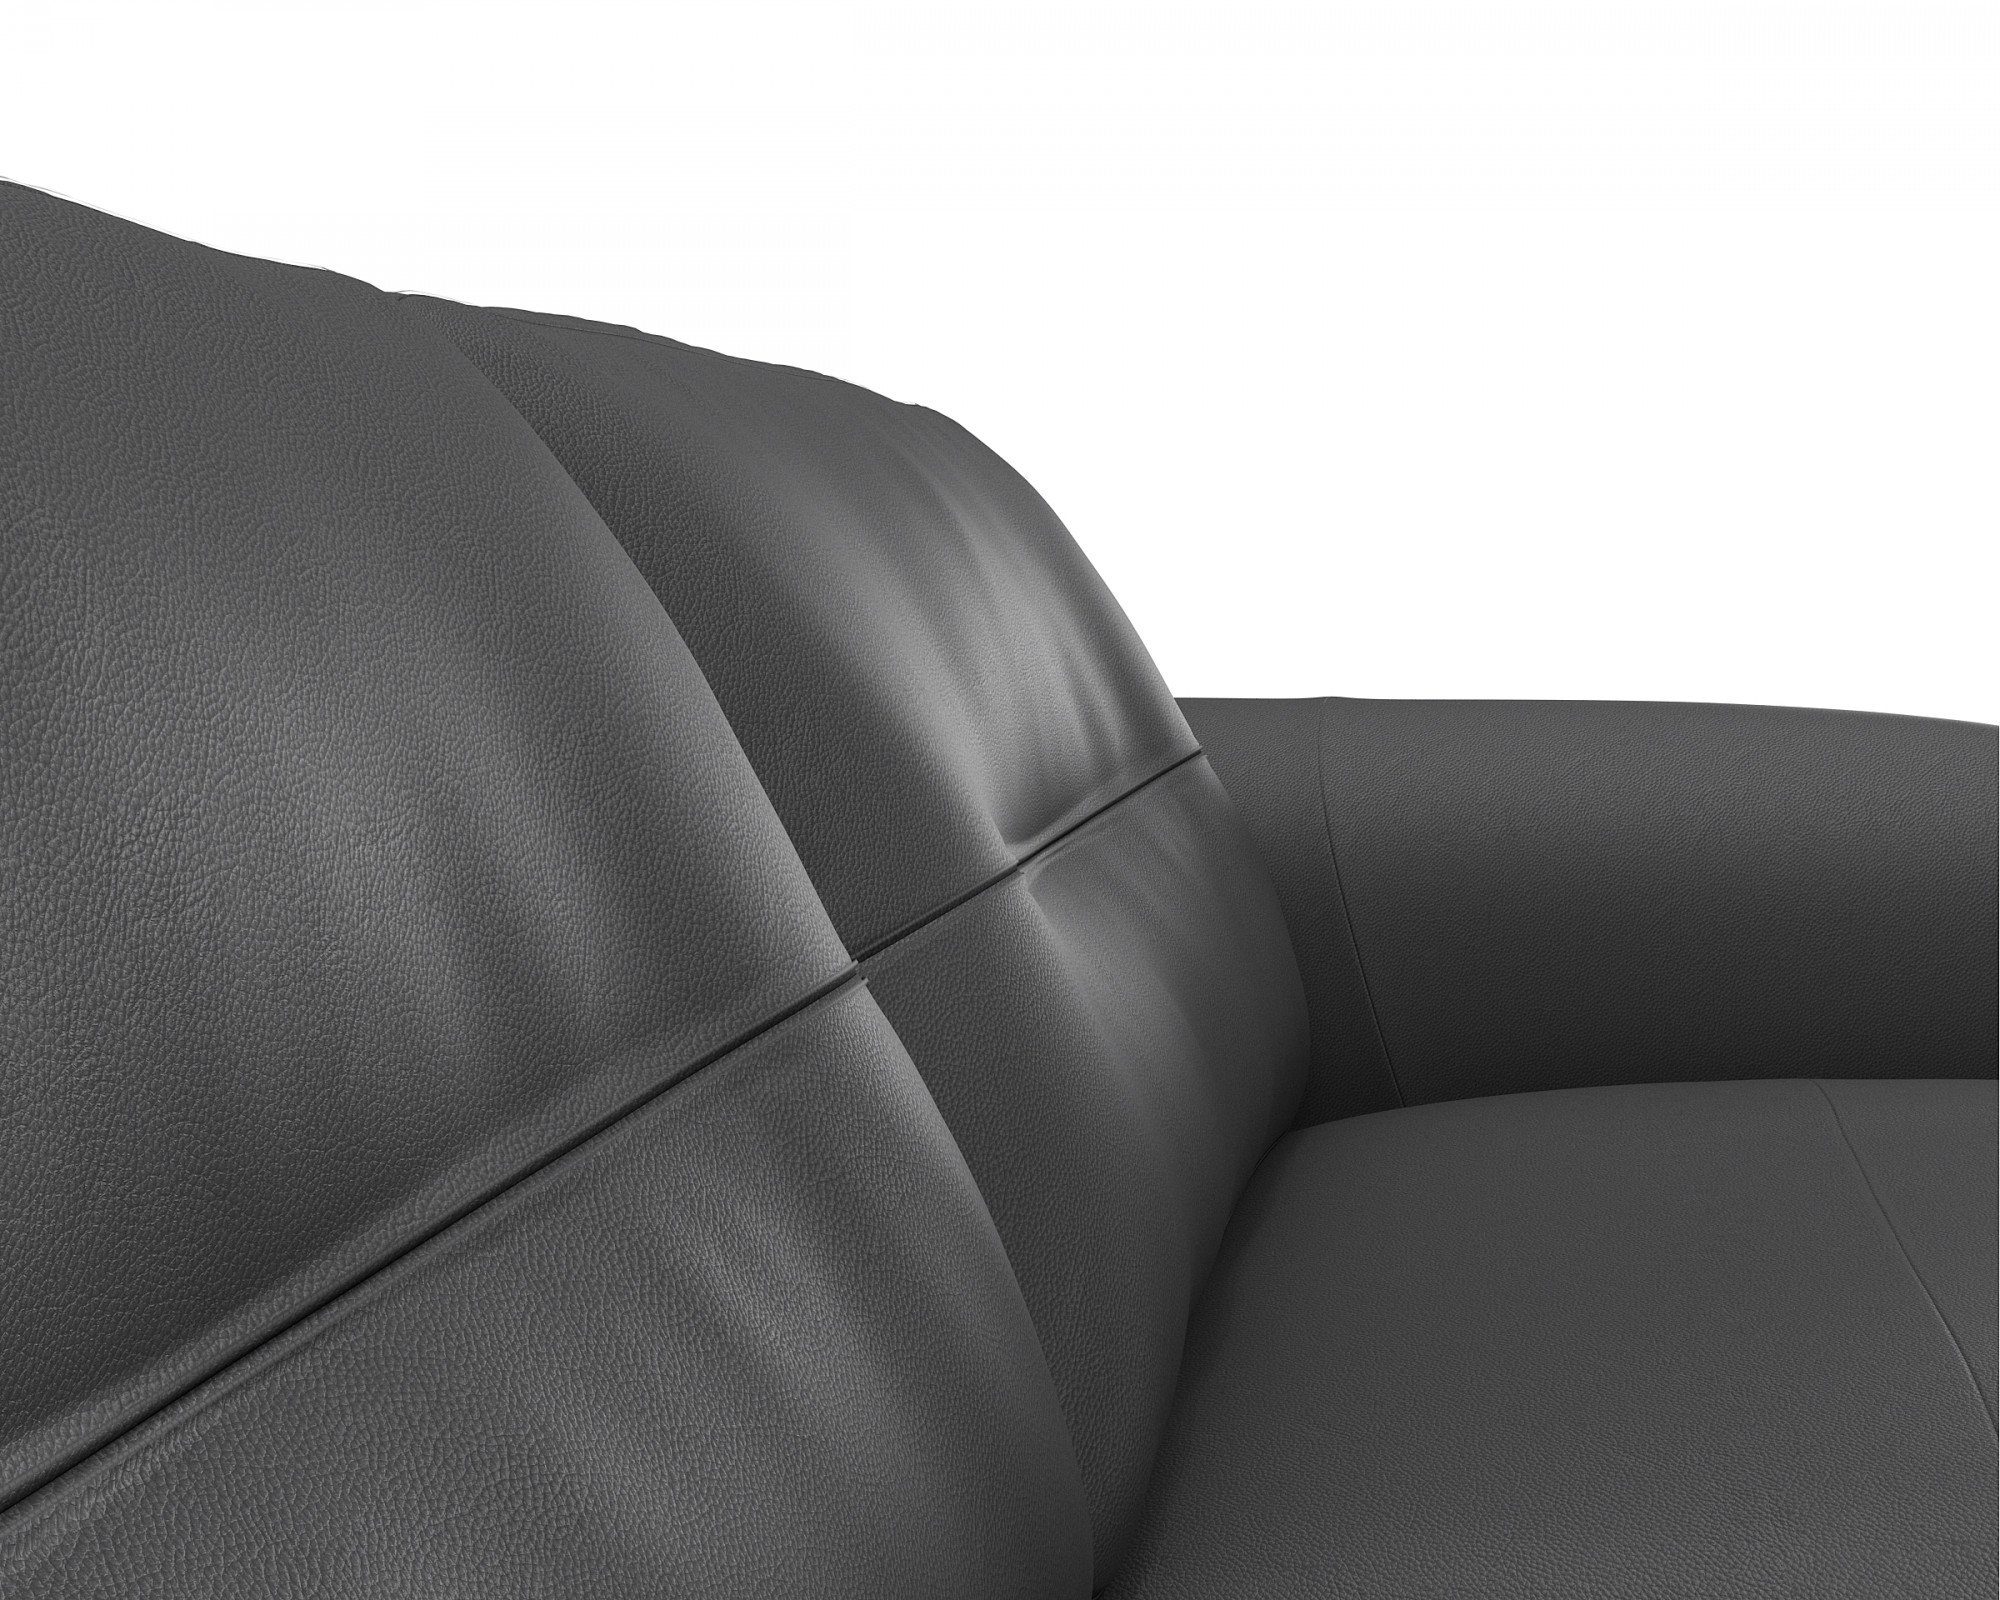 FLEXLUX 3-Sitzer Glow, Premium-Sitz: Arml. & Fuß Kaltschaum Federkern, Walnuss, schwarz